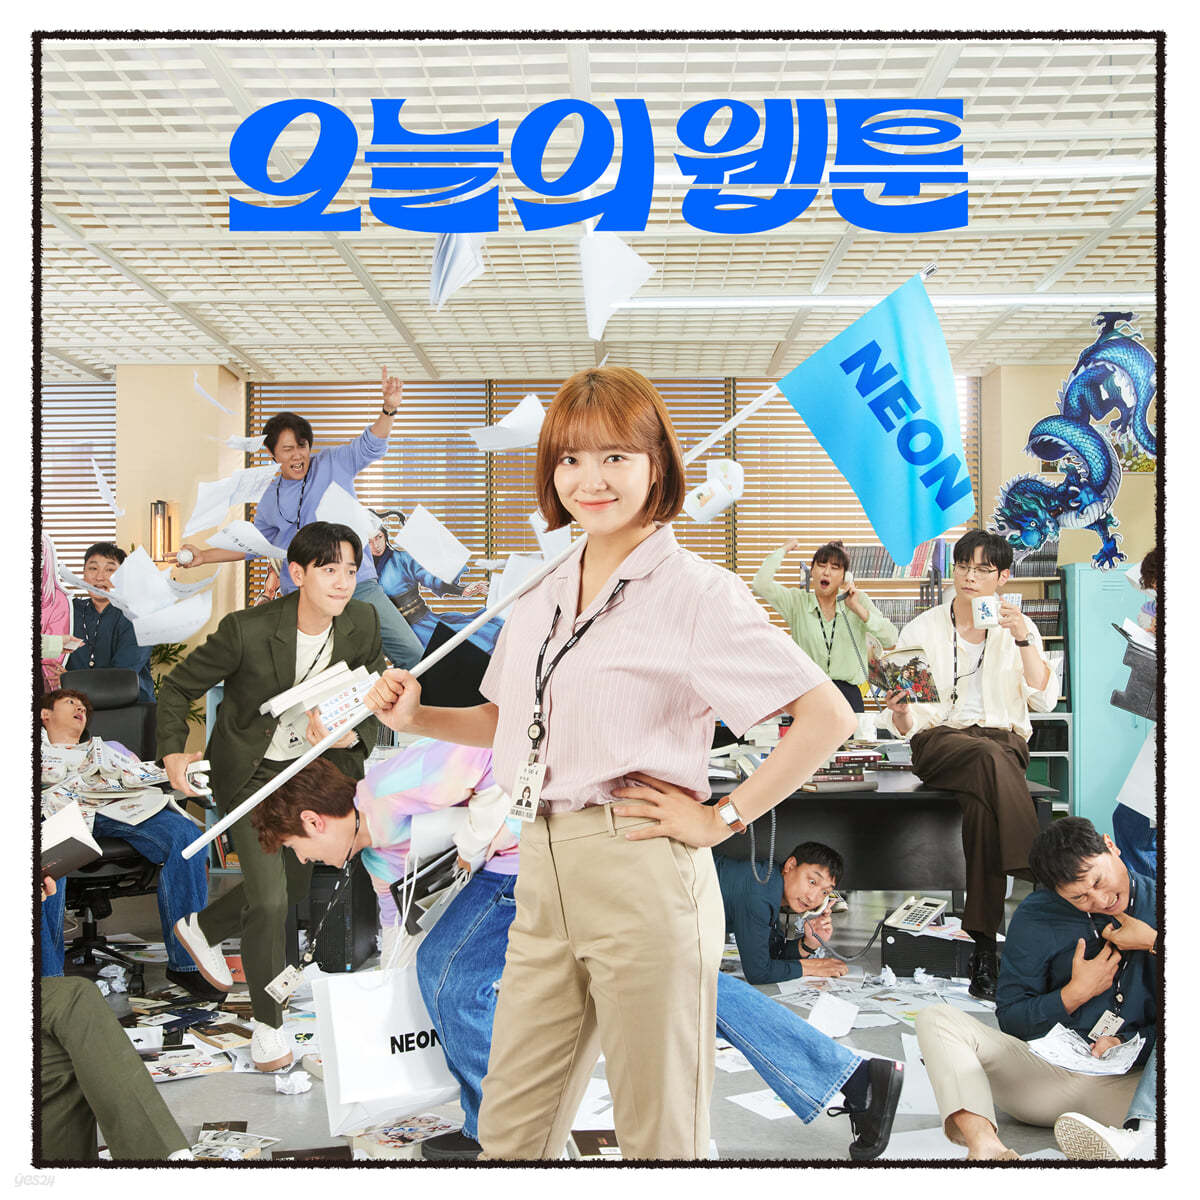 오늘의 웹툰 (SBS 금토드라마) OST